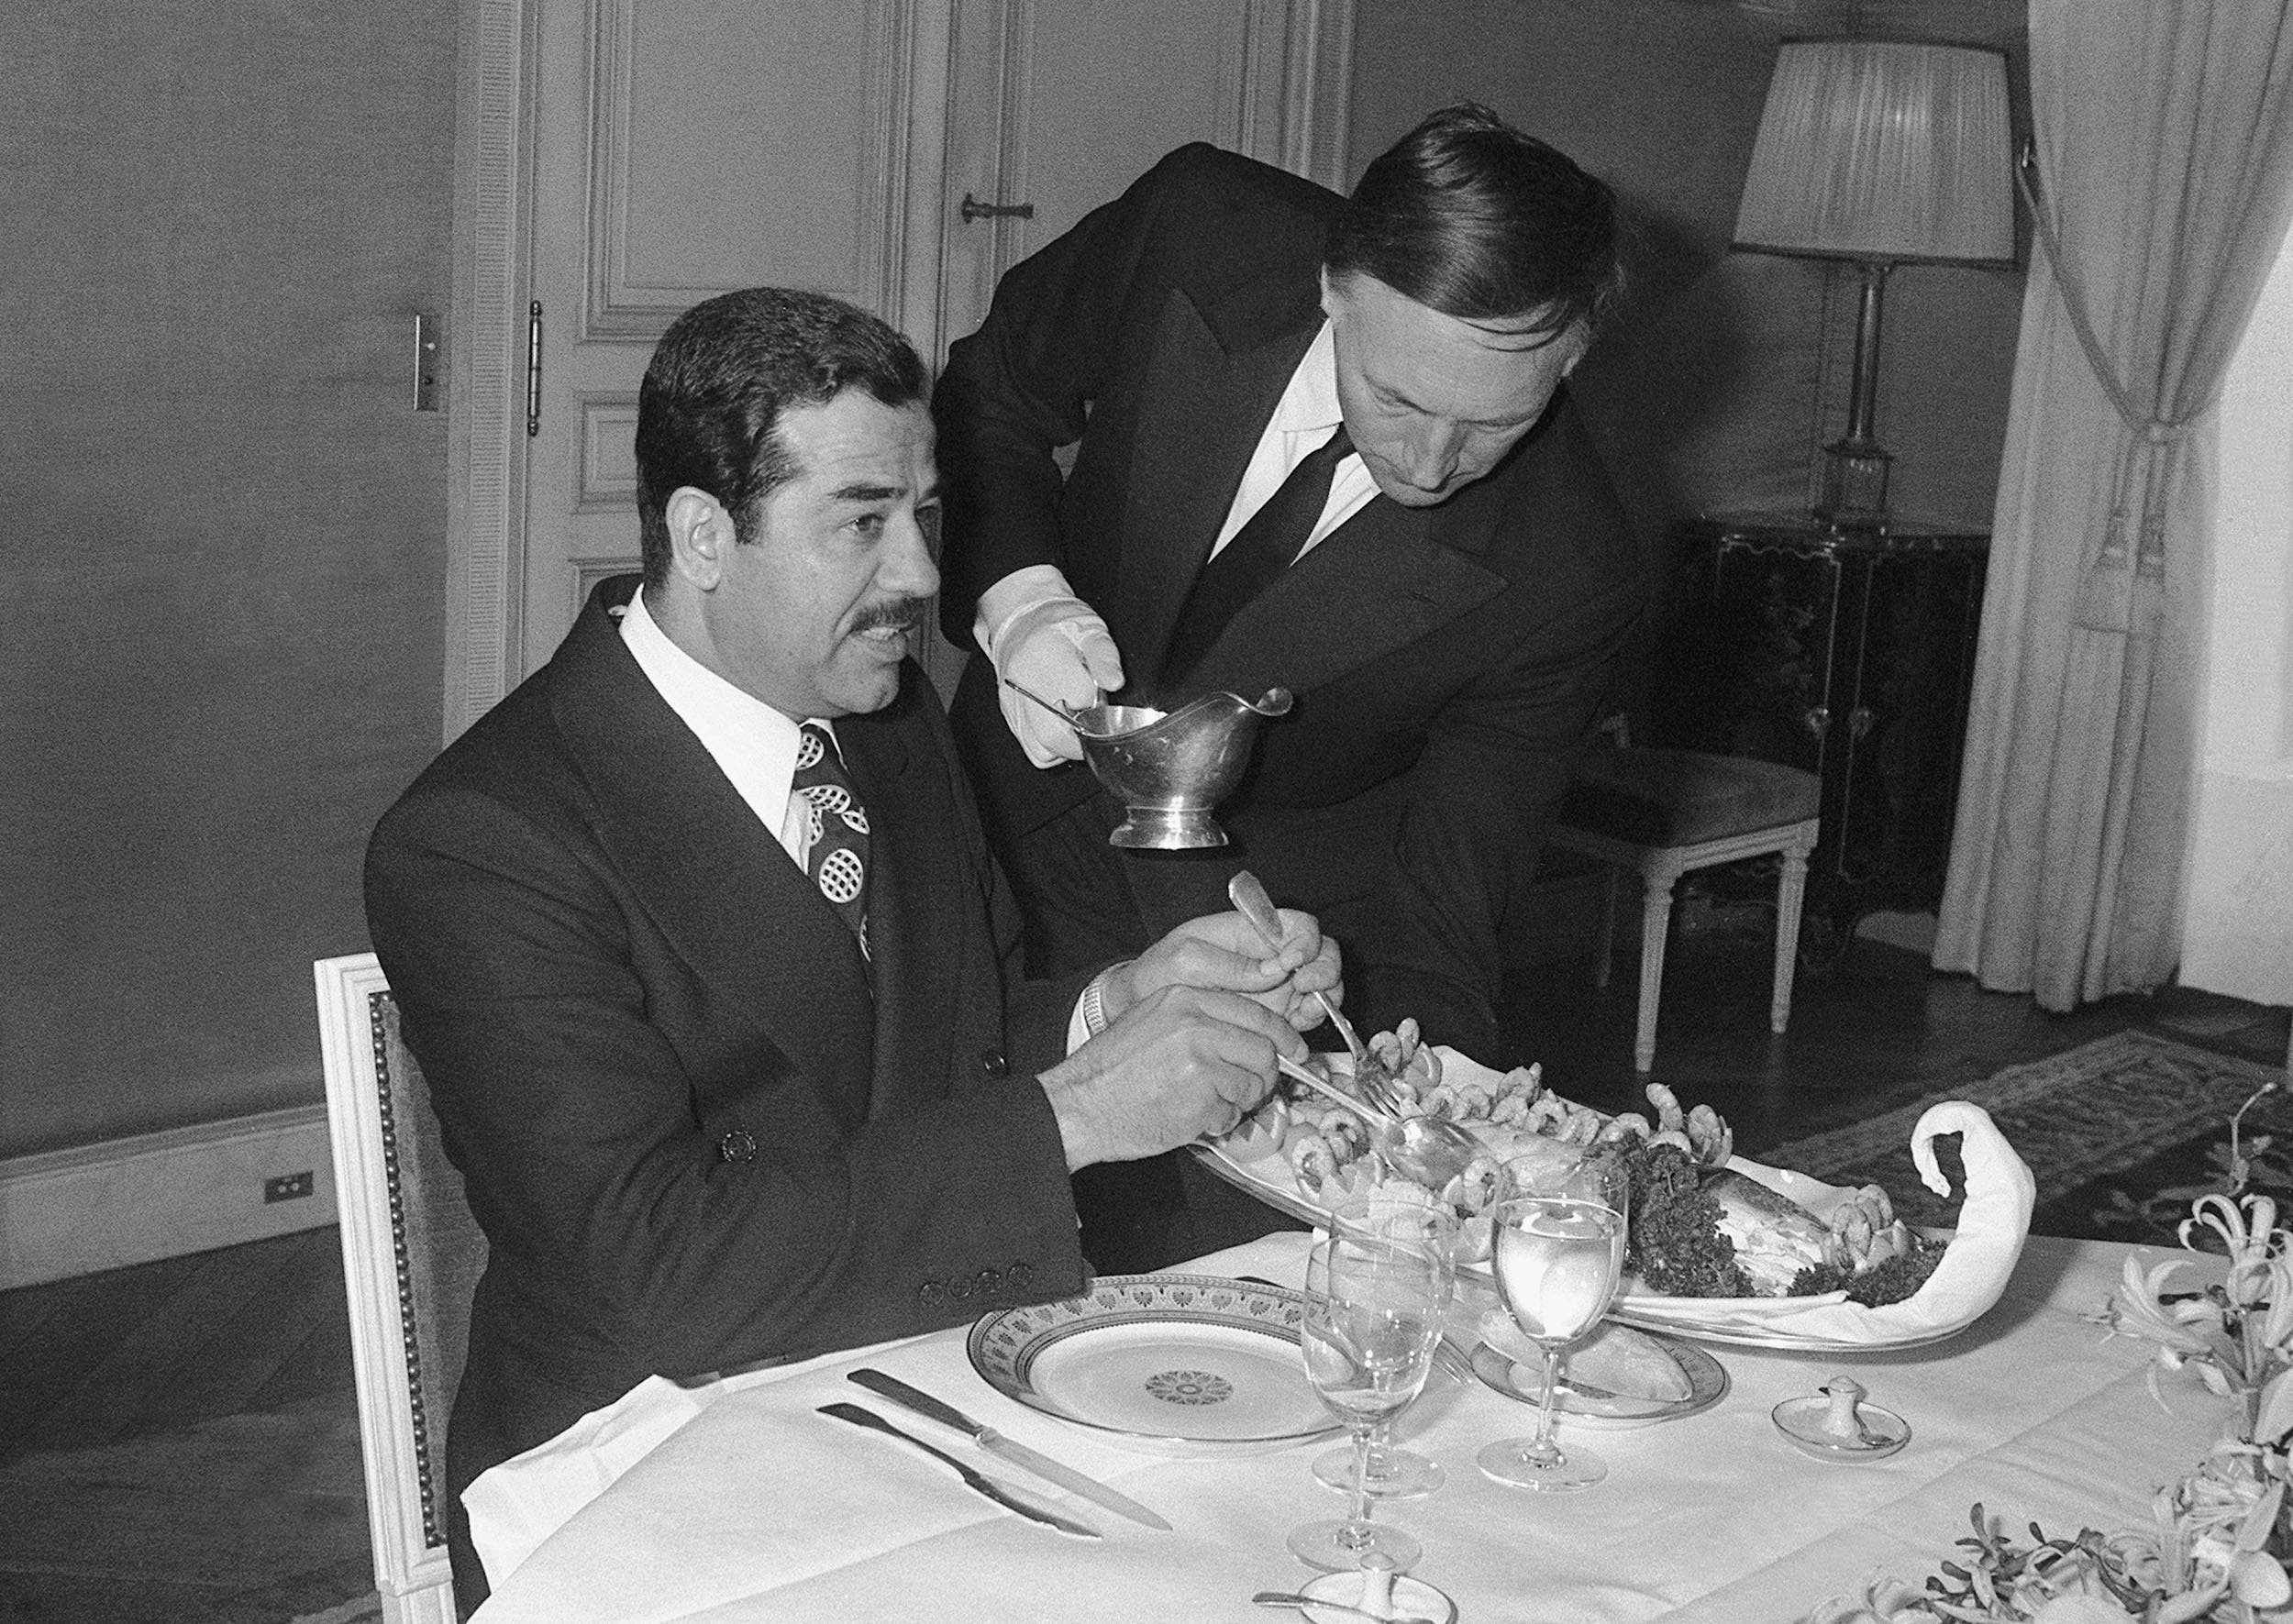 أكل مسكوف مع صدام.. قصة جاك شيراك الذي "أسره الشرق"